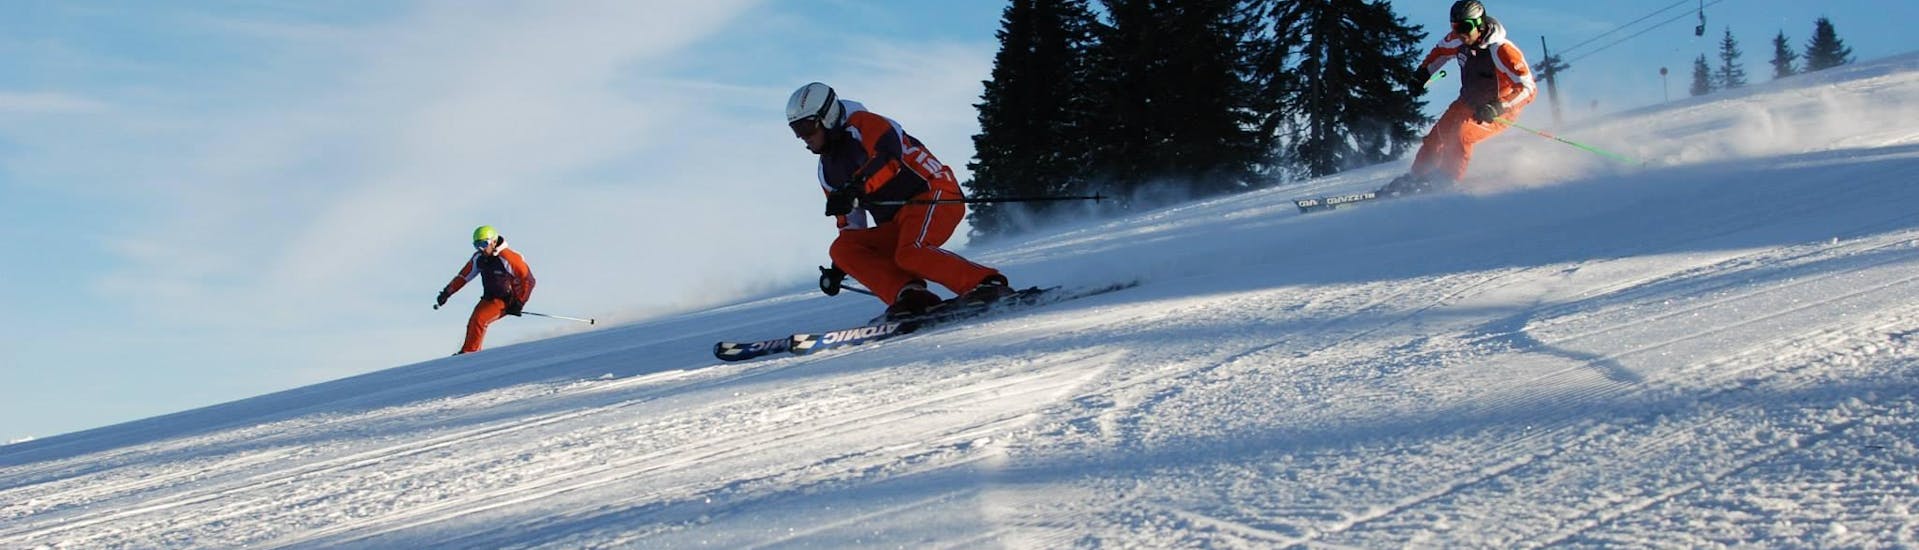 Skilessen voor volwassenen + skihuurpakket voor alle niveaus met Skischule Toni Gruber.